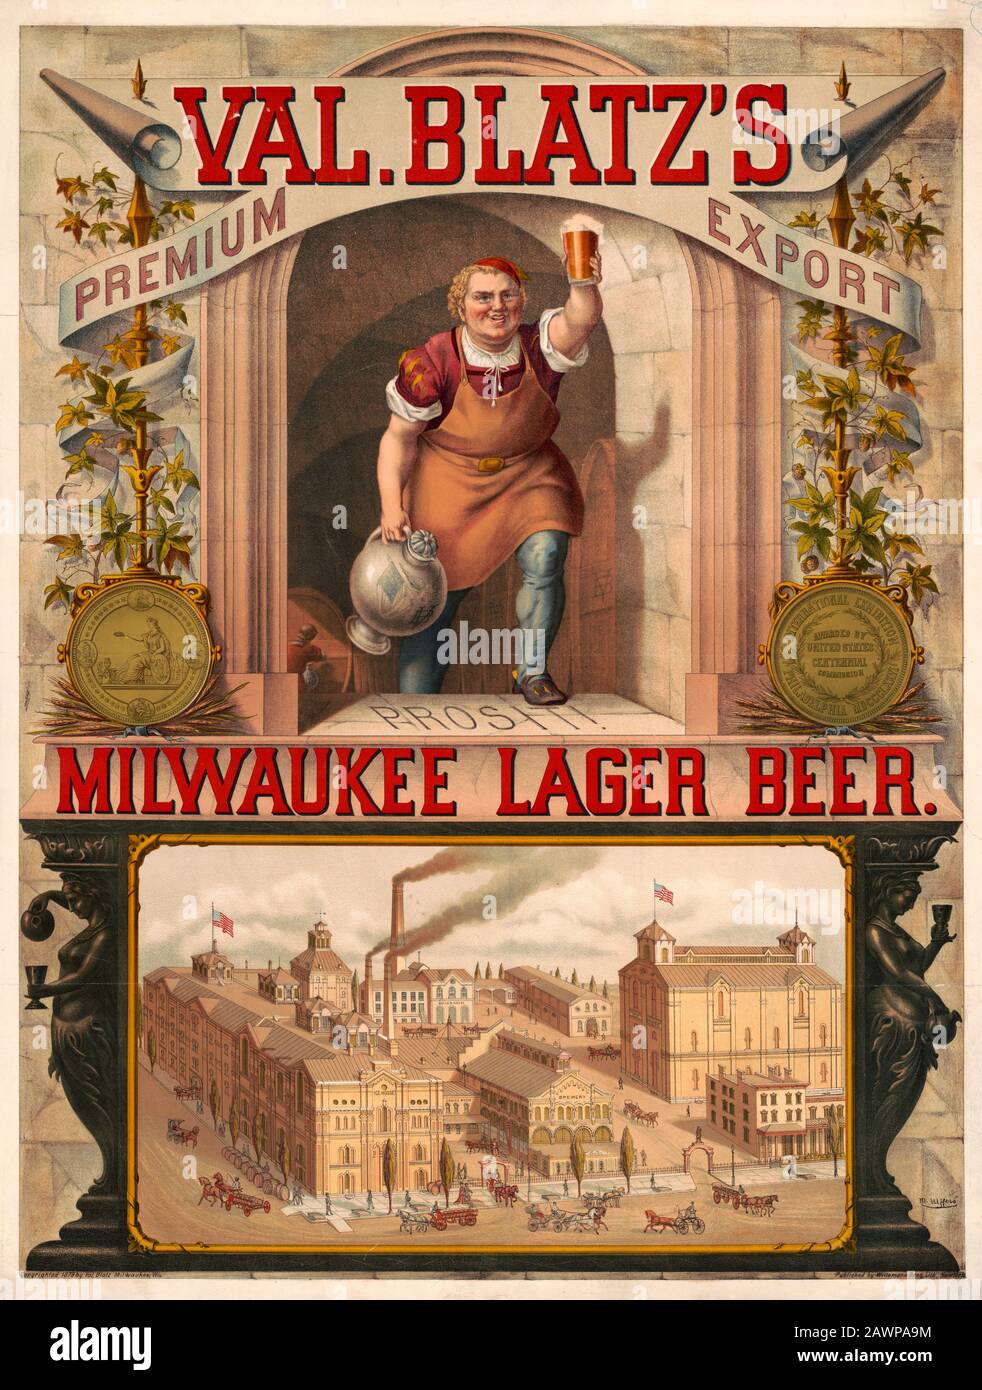 Val. Blatz's Premium-Export, Milwaukee Lager Beer / M. Ulffers. Ausdruck der Anzeige für Val. Blatz's Bier aus Milwaukee Lager zeigt einen Brauer, der ein Glas Bier aufwirft, und eine Vogelperspektive auf die Brauerei. Juli 1879 Stockfoto